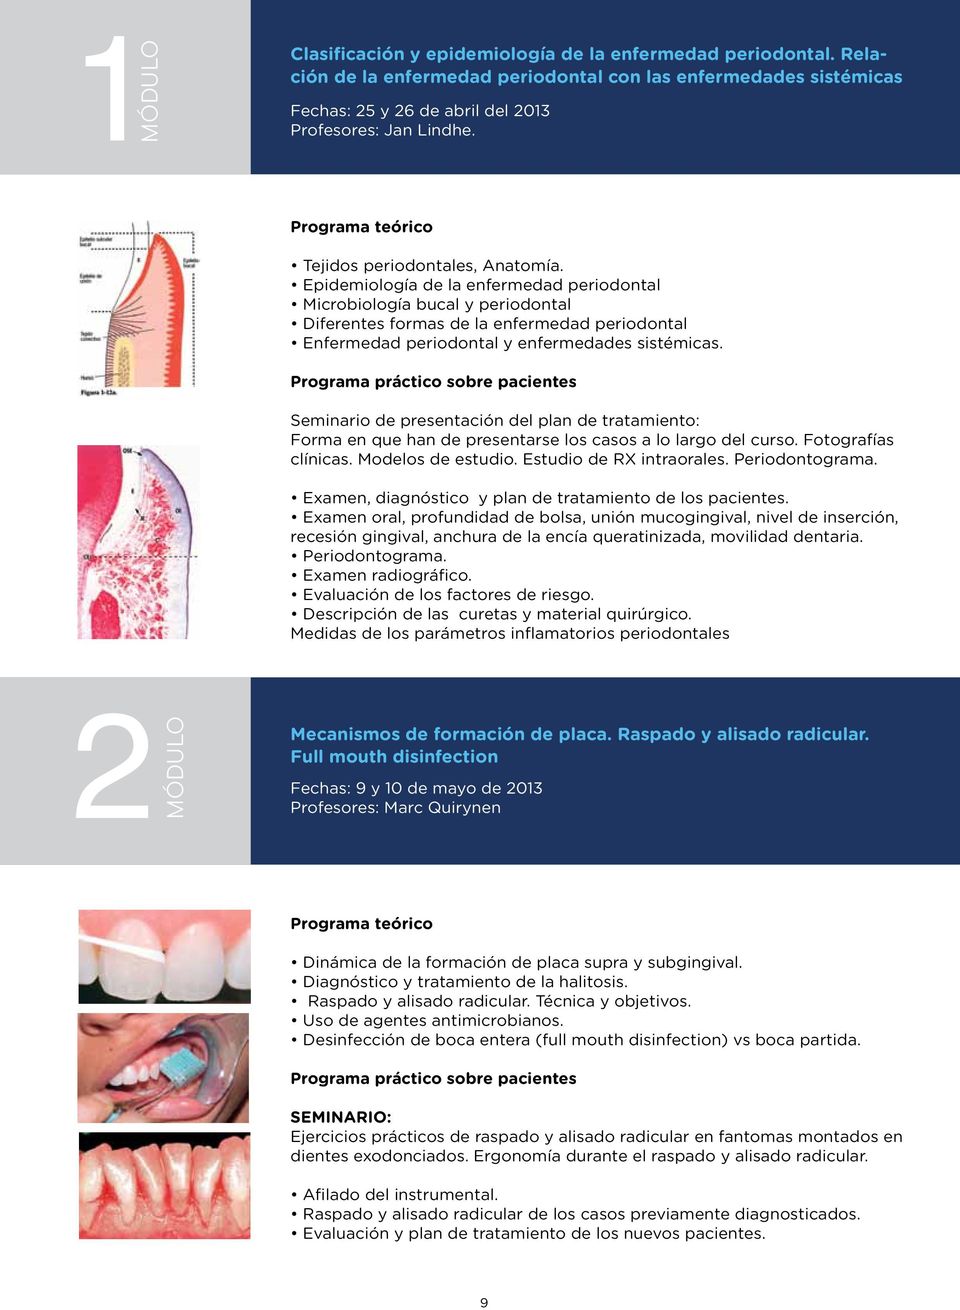 Epidemiología de la enfermedad periodontal Microbiología bucal y periodontal Diferentes formas de la enfermedad periodontal Enfermedad periodontal y enfermedades sistémicas.